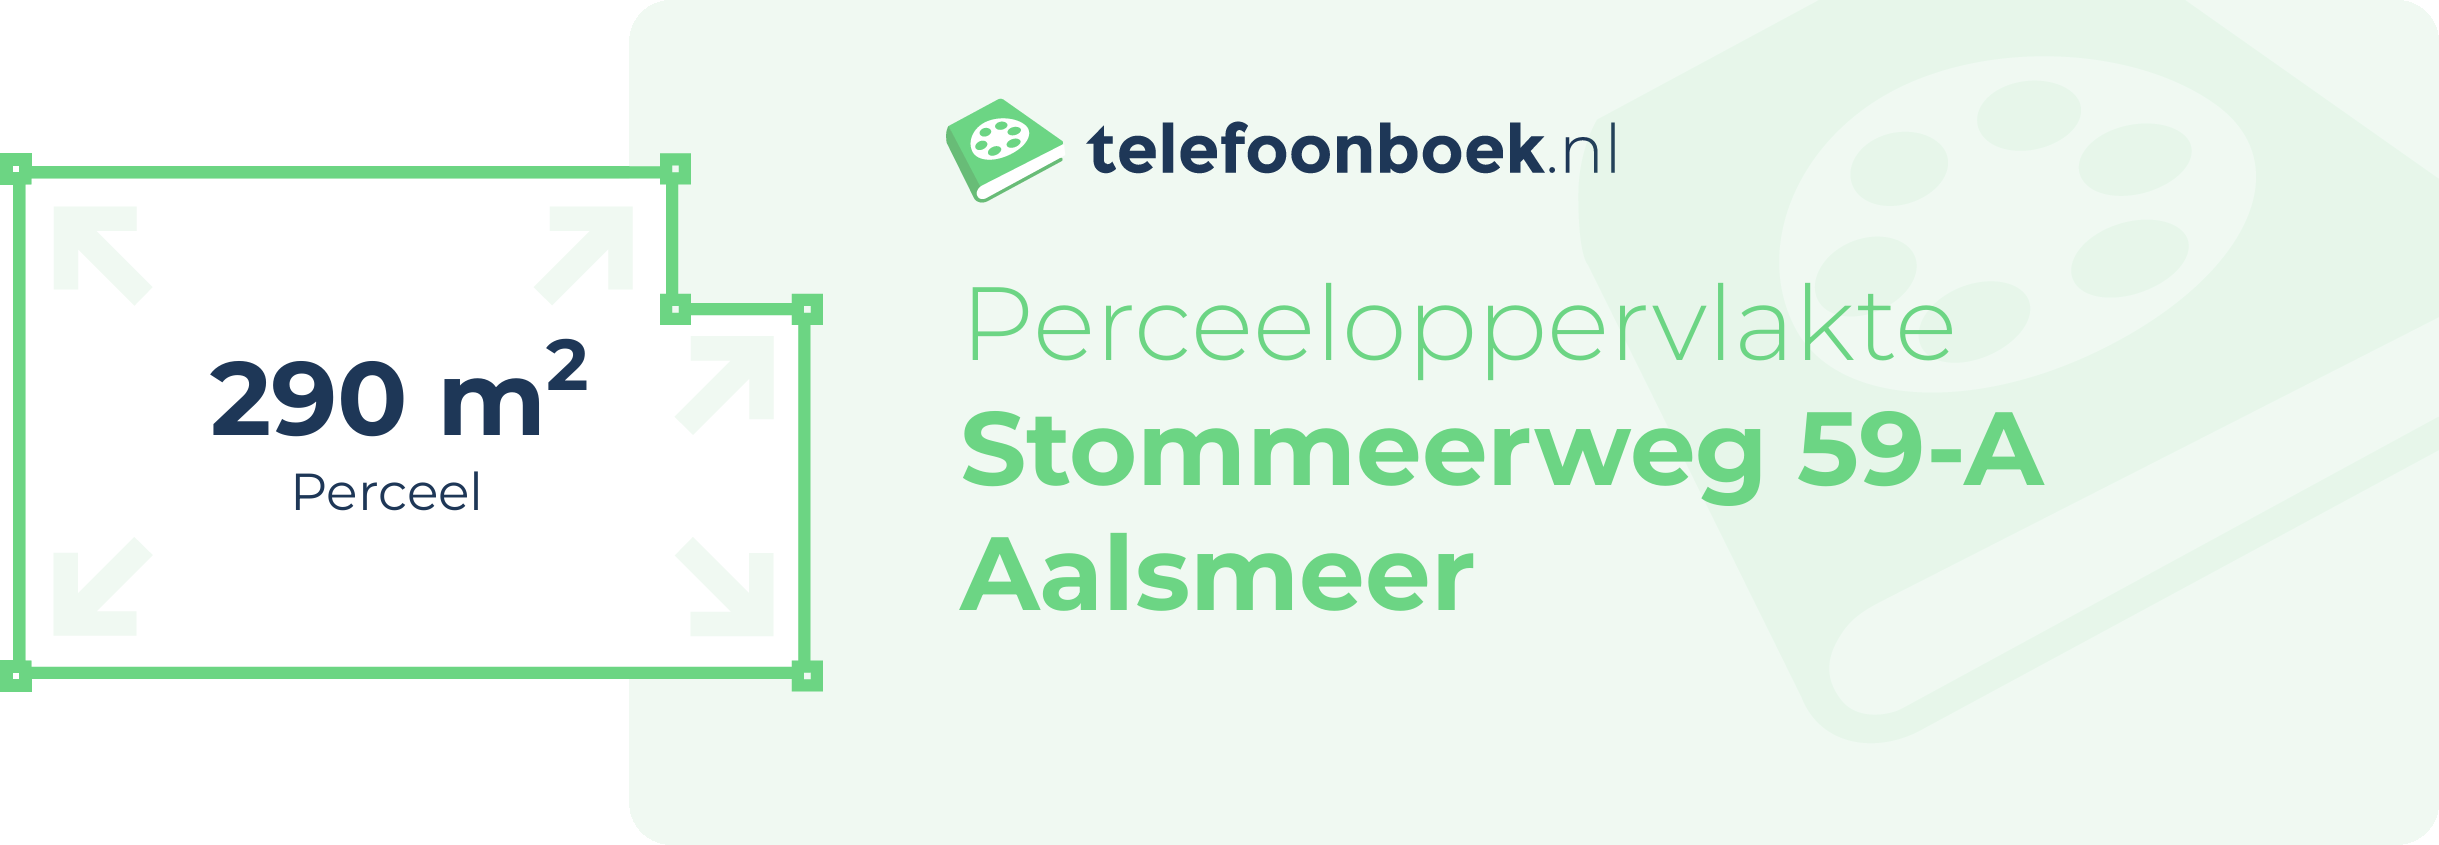 Perceeloppervlakte Stommeerweg 59-A Aalsmeer